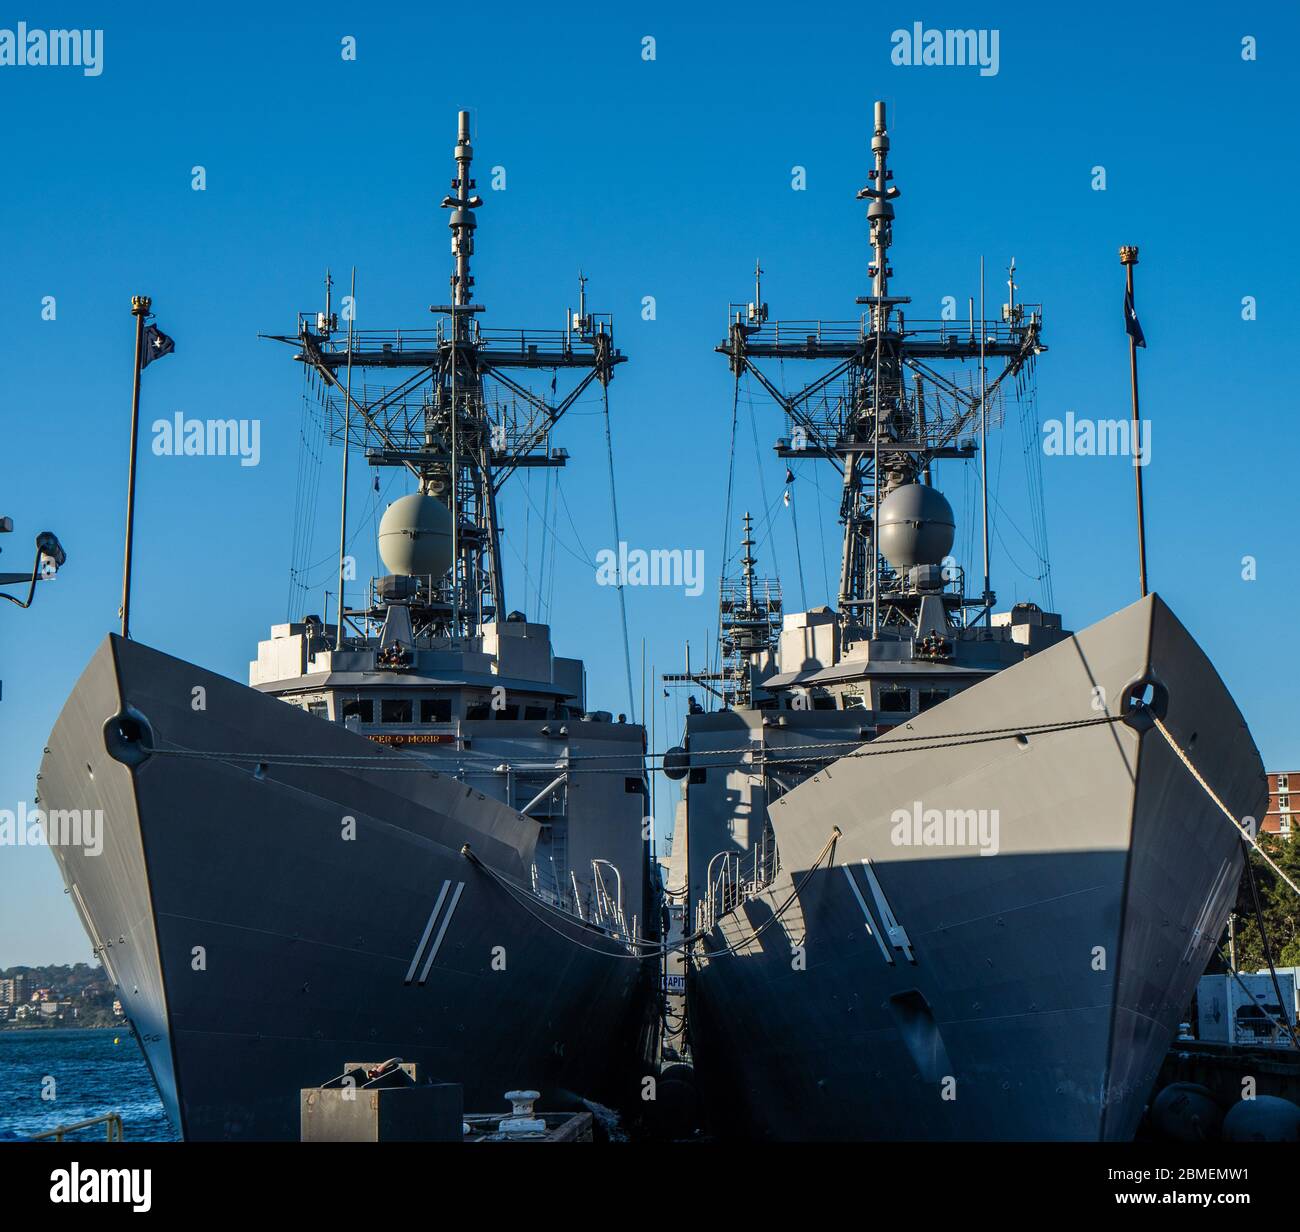 Los dos buques de guerra australianos se vendieron a la Marina chilena. HMAS Newcastle y HMAS Melbourne, fragatas de clase Adelaide, serán renombradas Foto de stock